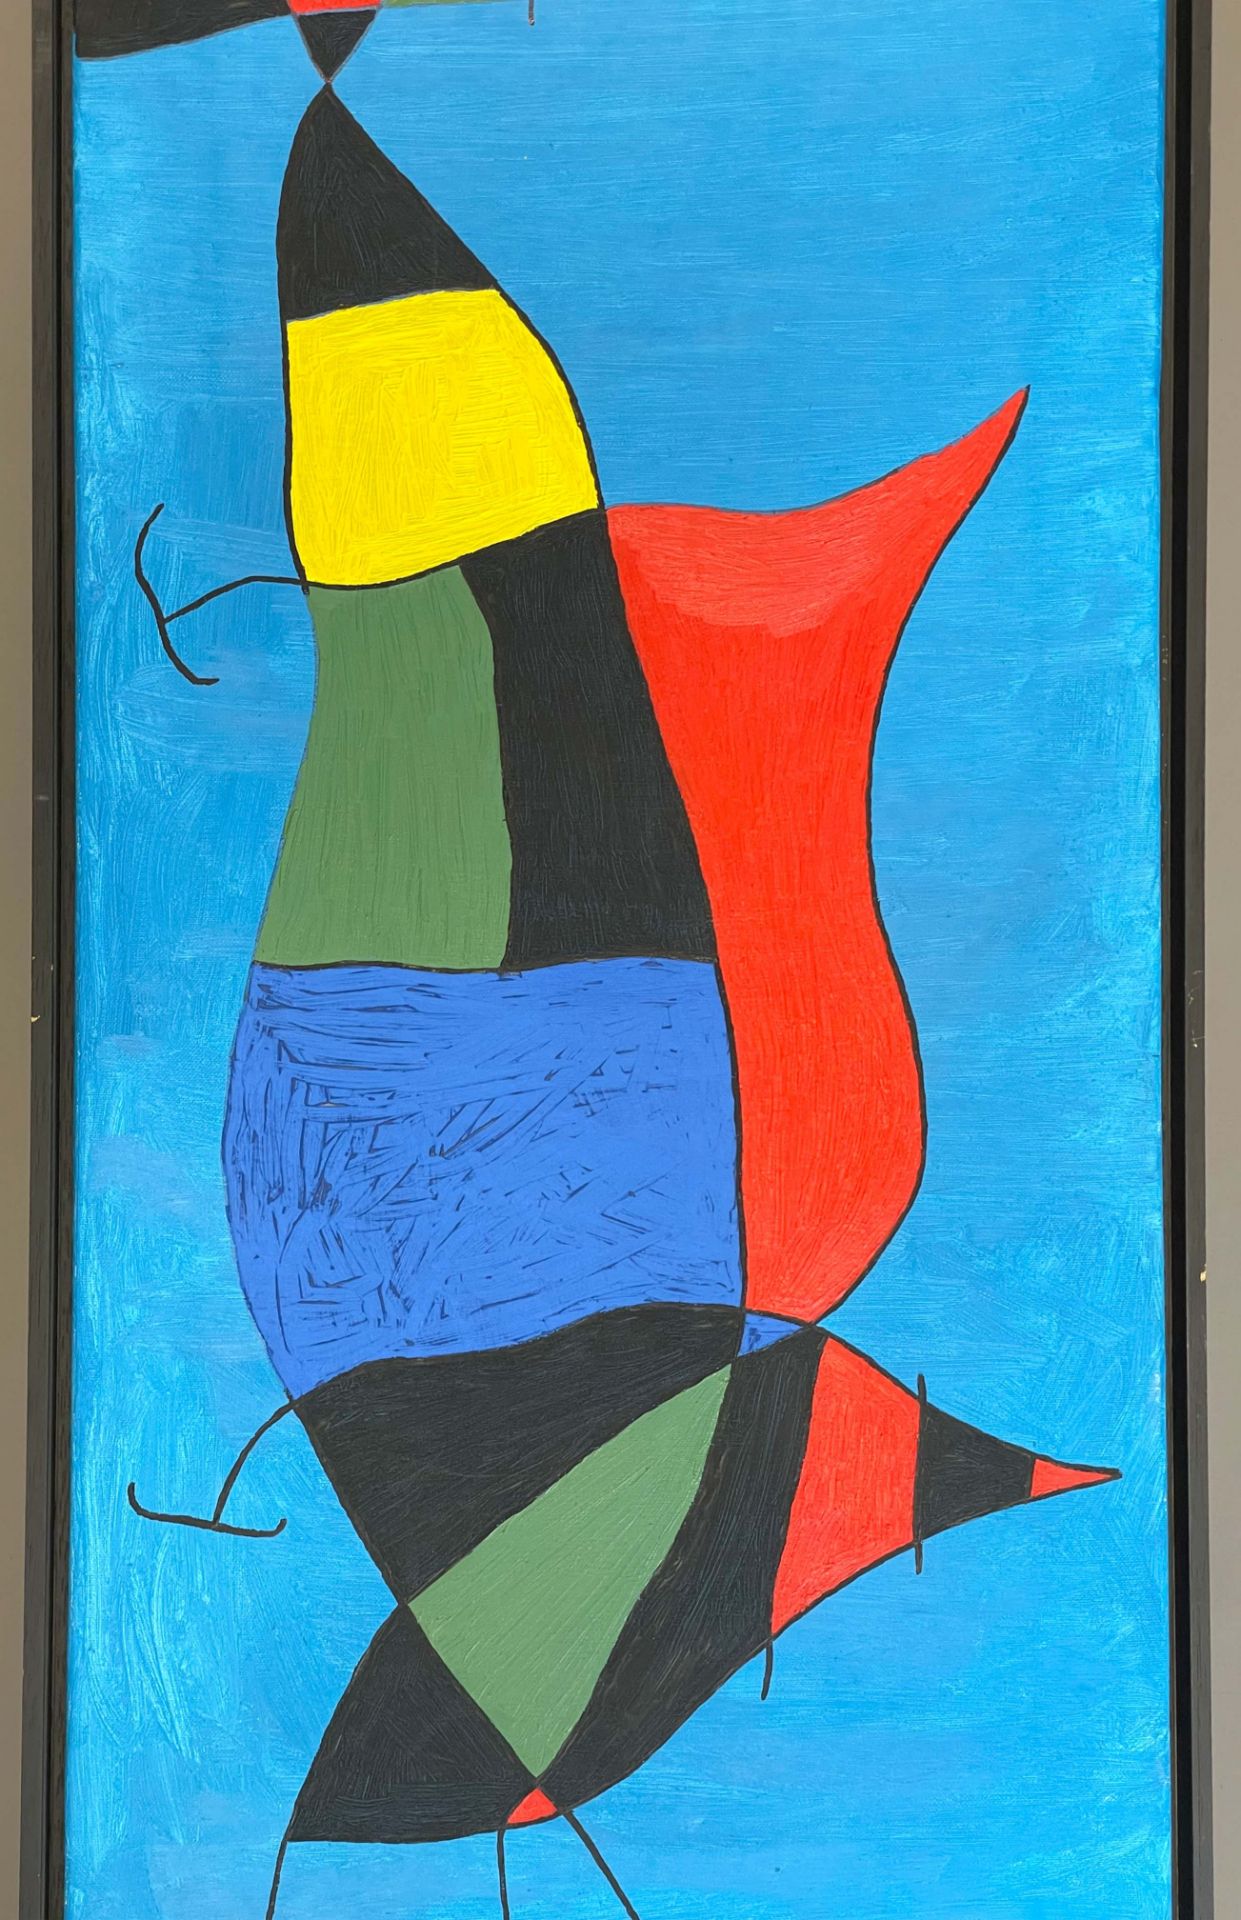 UNSIGNIERT (XX). Surrealistische Personendarstellung in der Art von Joan Miro. - Bild 4 aus 8